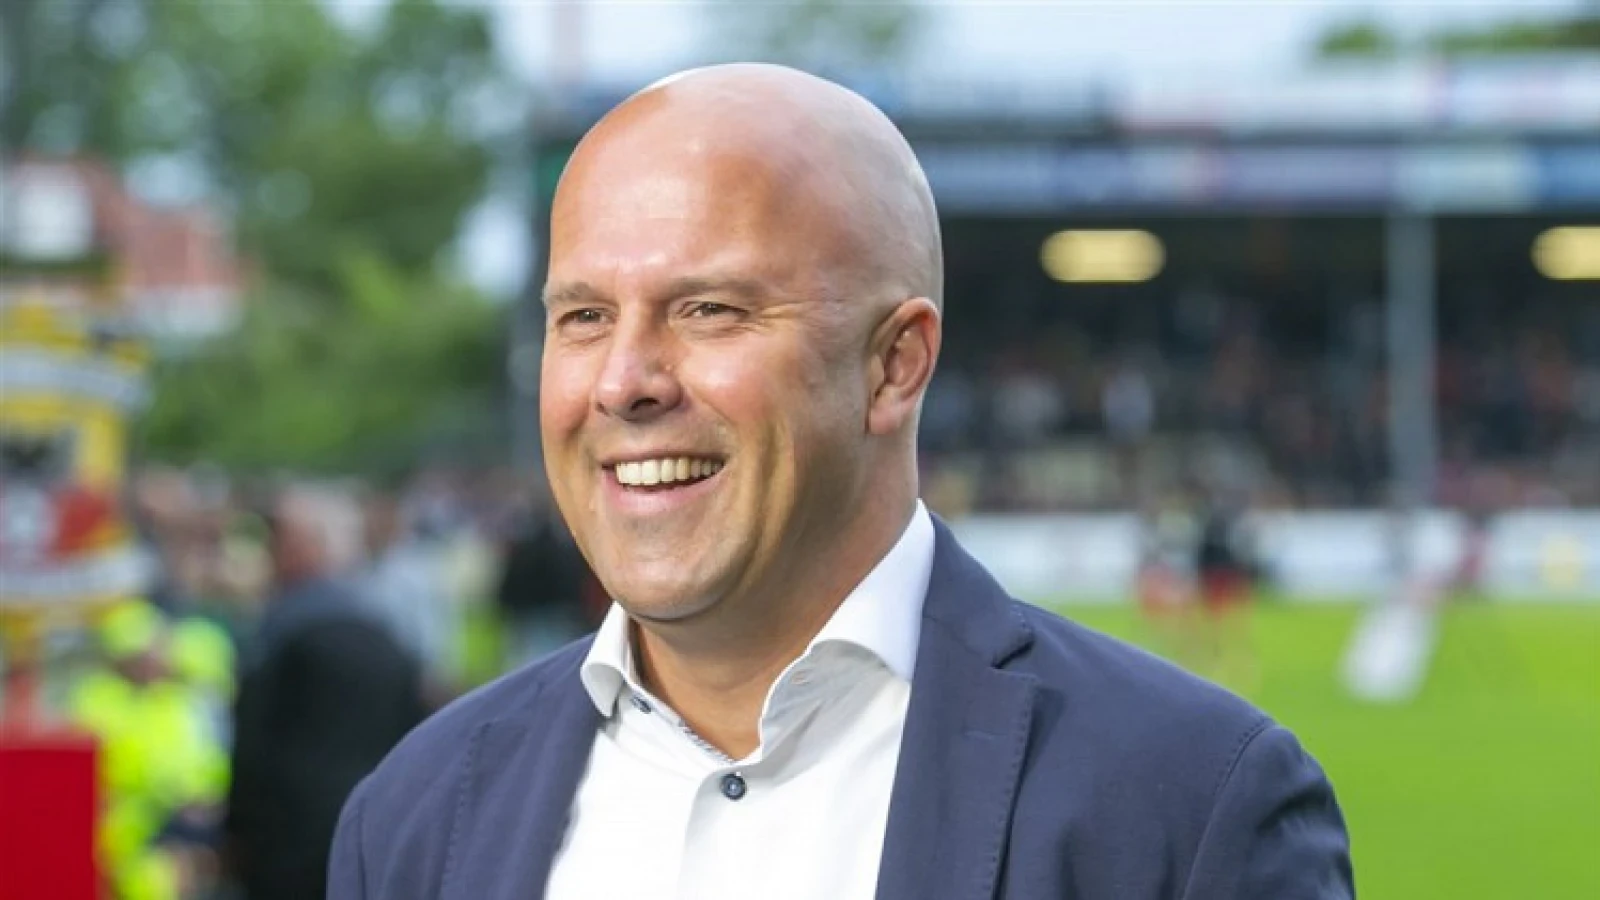 OPSTELLING | Feyenoord start met Hendriks en Pedersen in de basis